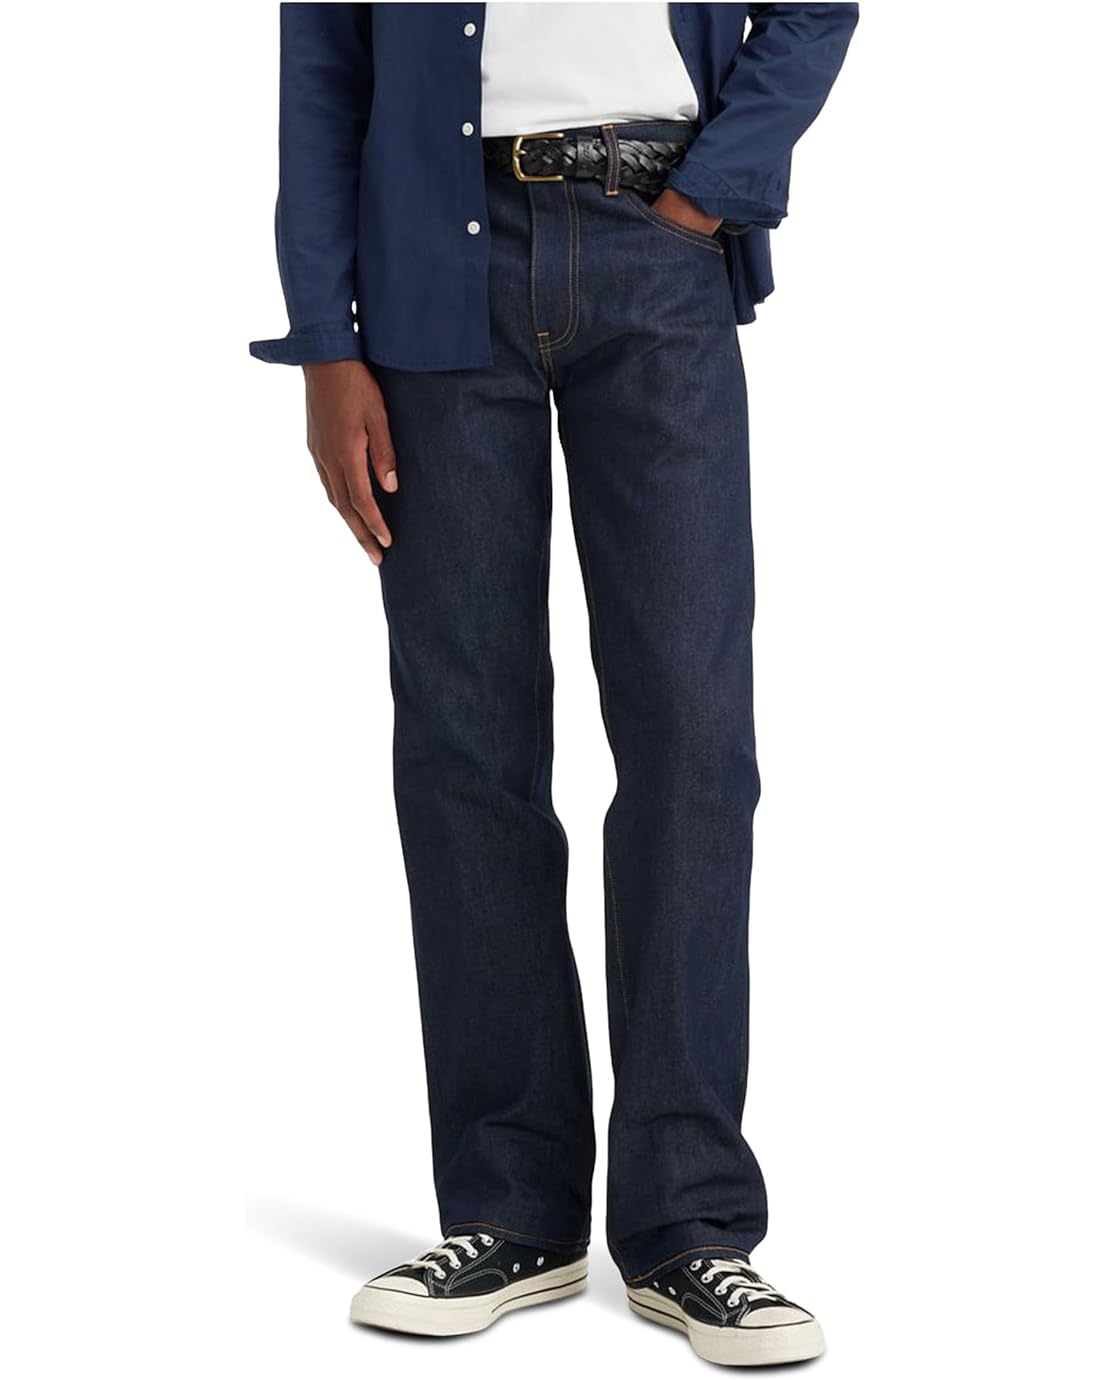 Levis Premium 517 Bootcut Jeans